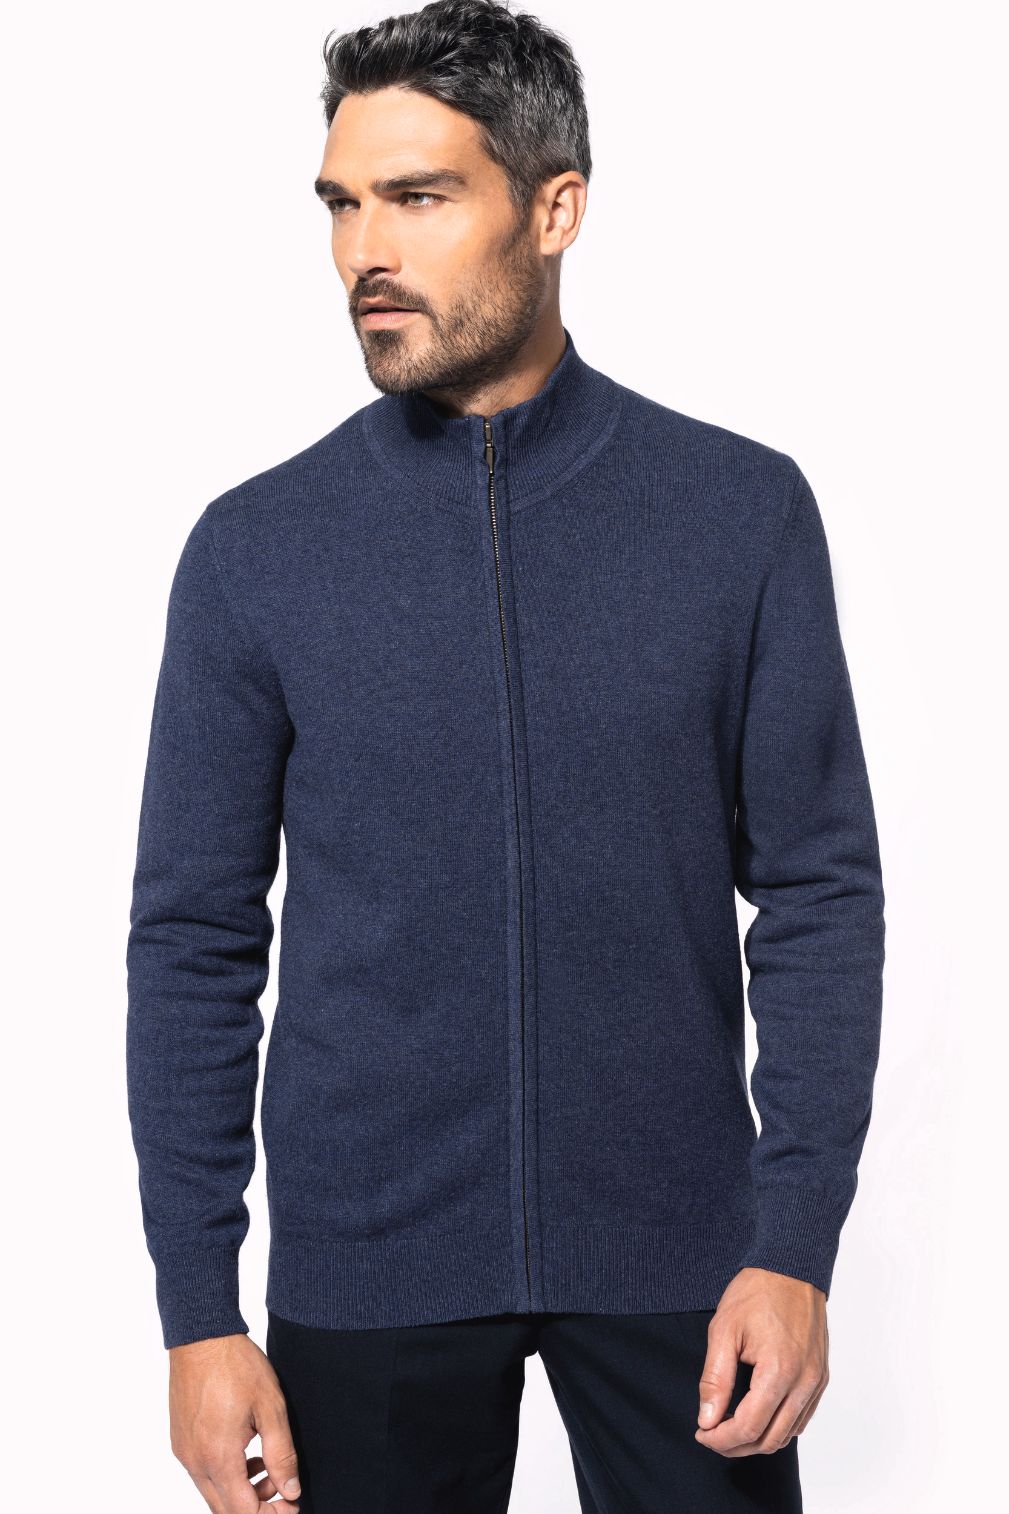 Pánský svetr na zip Premium cardigan - Výprodej - zvìtšit obrázek